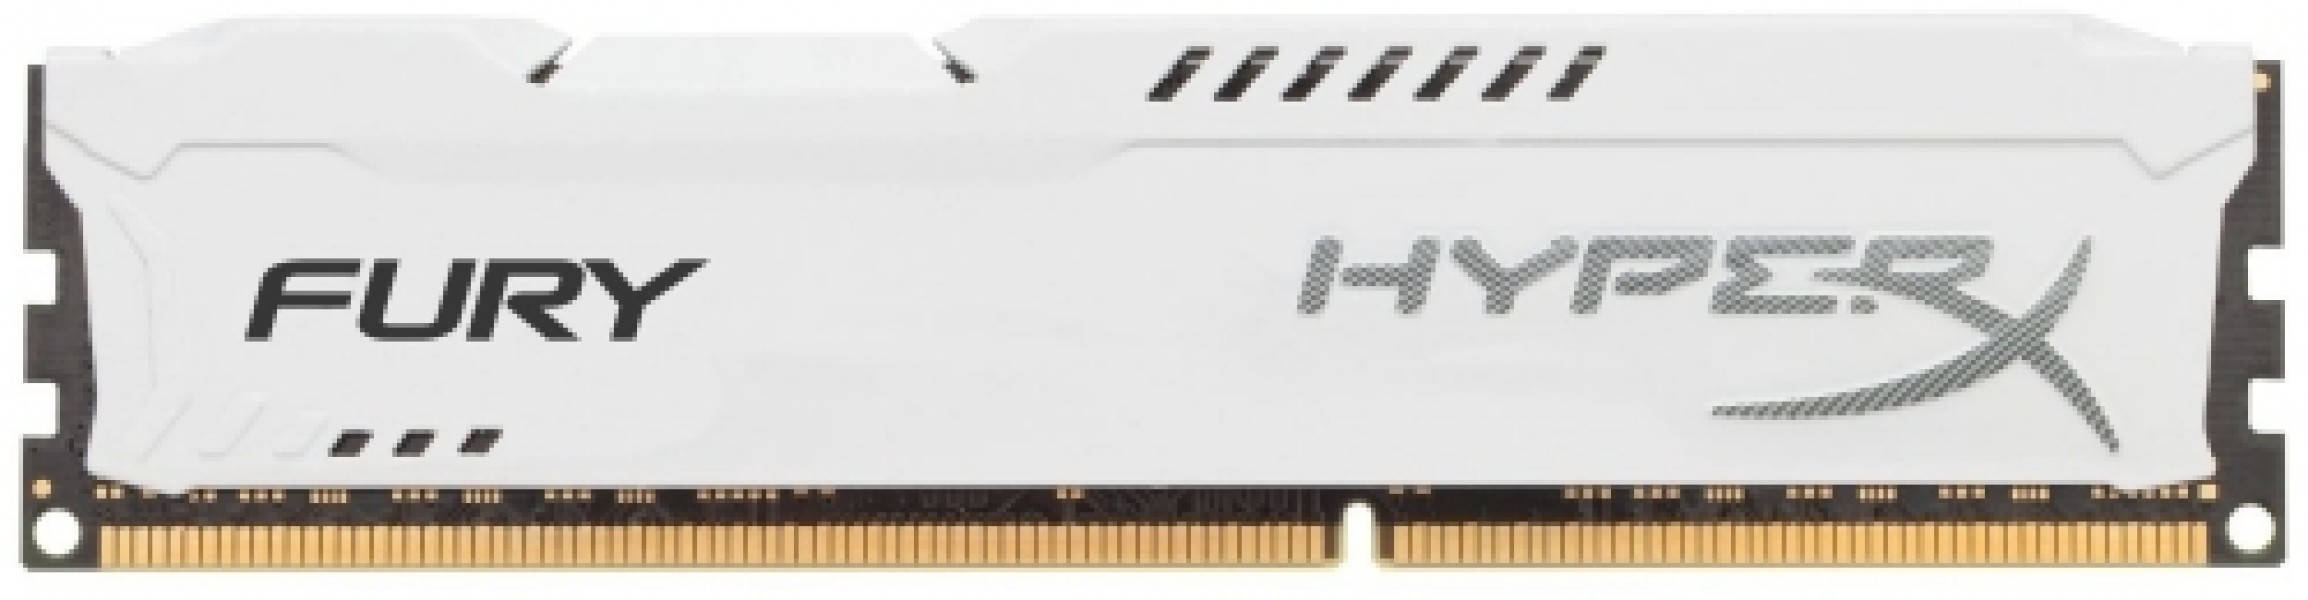 Kingston 8GB DDR3 PC12800 CL10 DIMM HyperX Fury White HX316C10FW/8